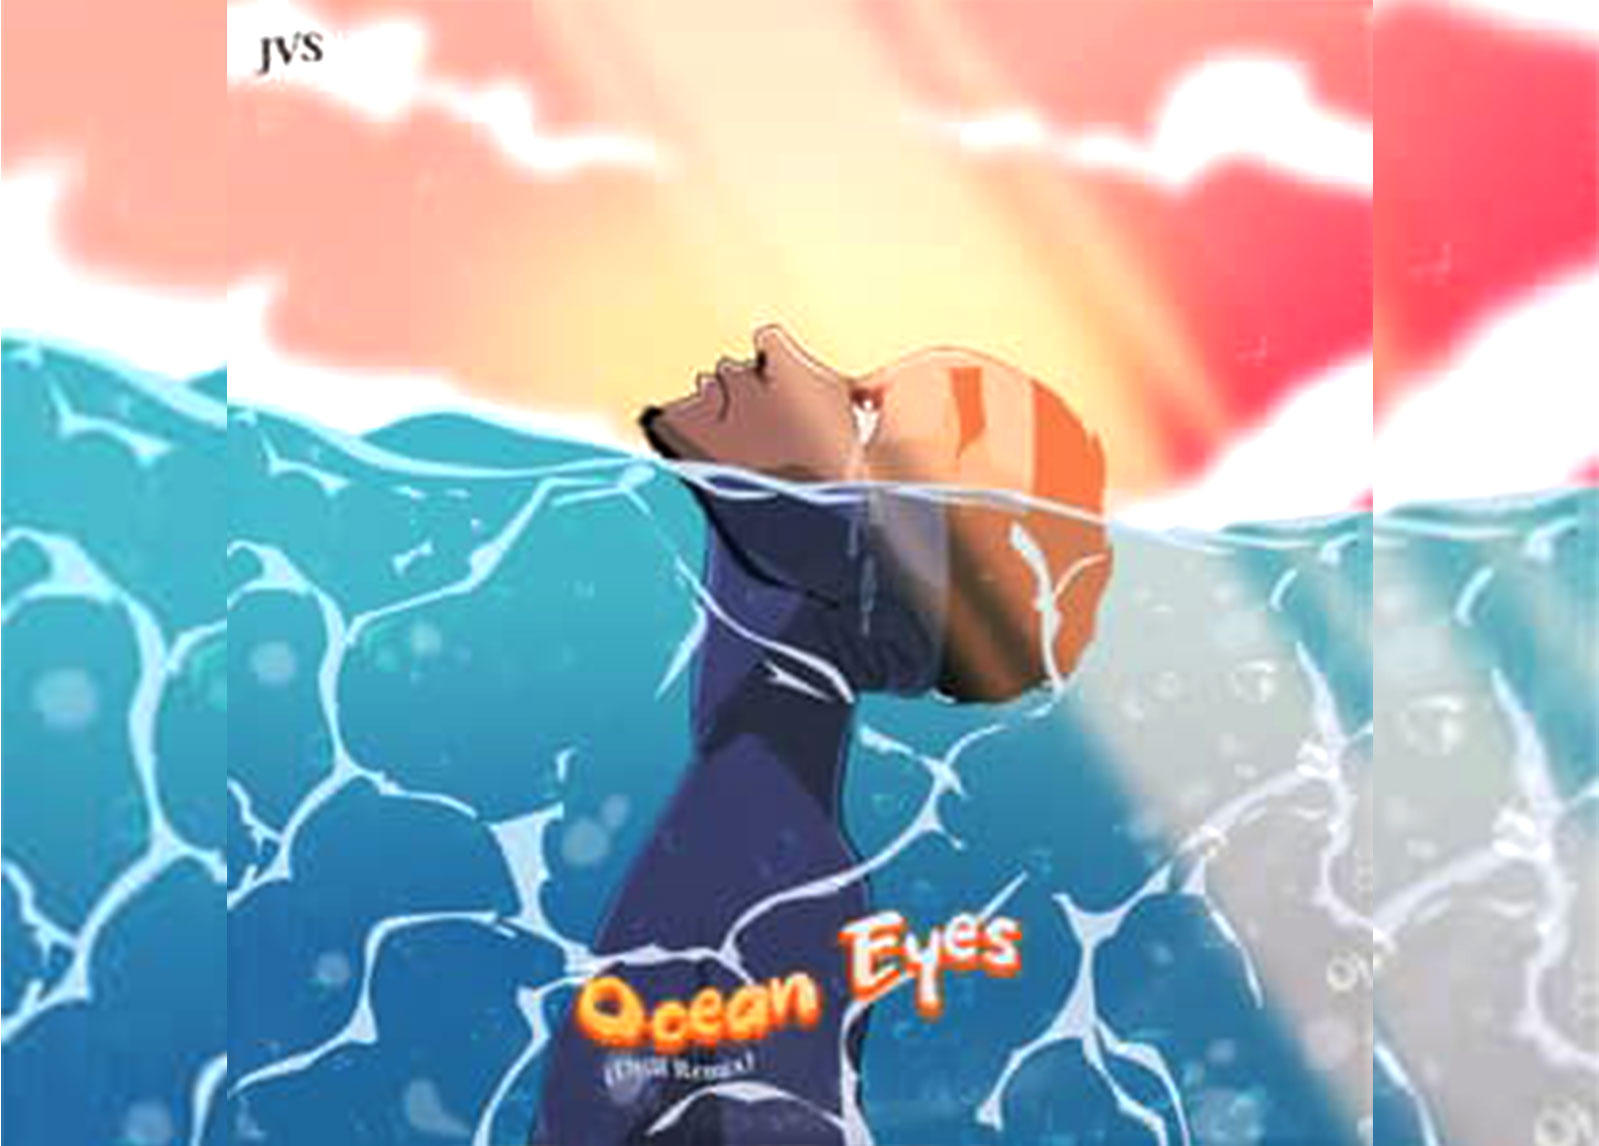 JVS Drops 'Ocean Eyes' (Drill Remix) Official Music Video